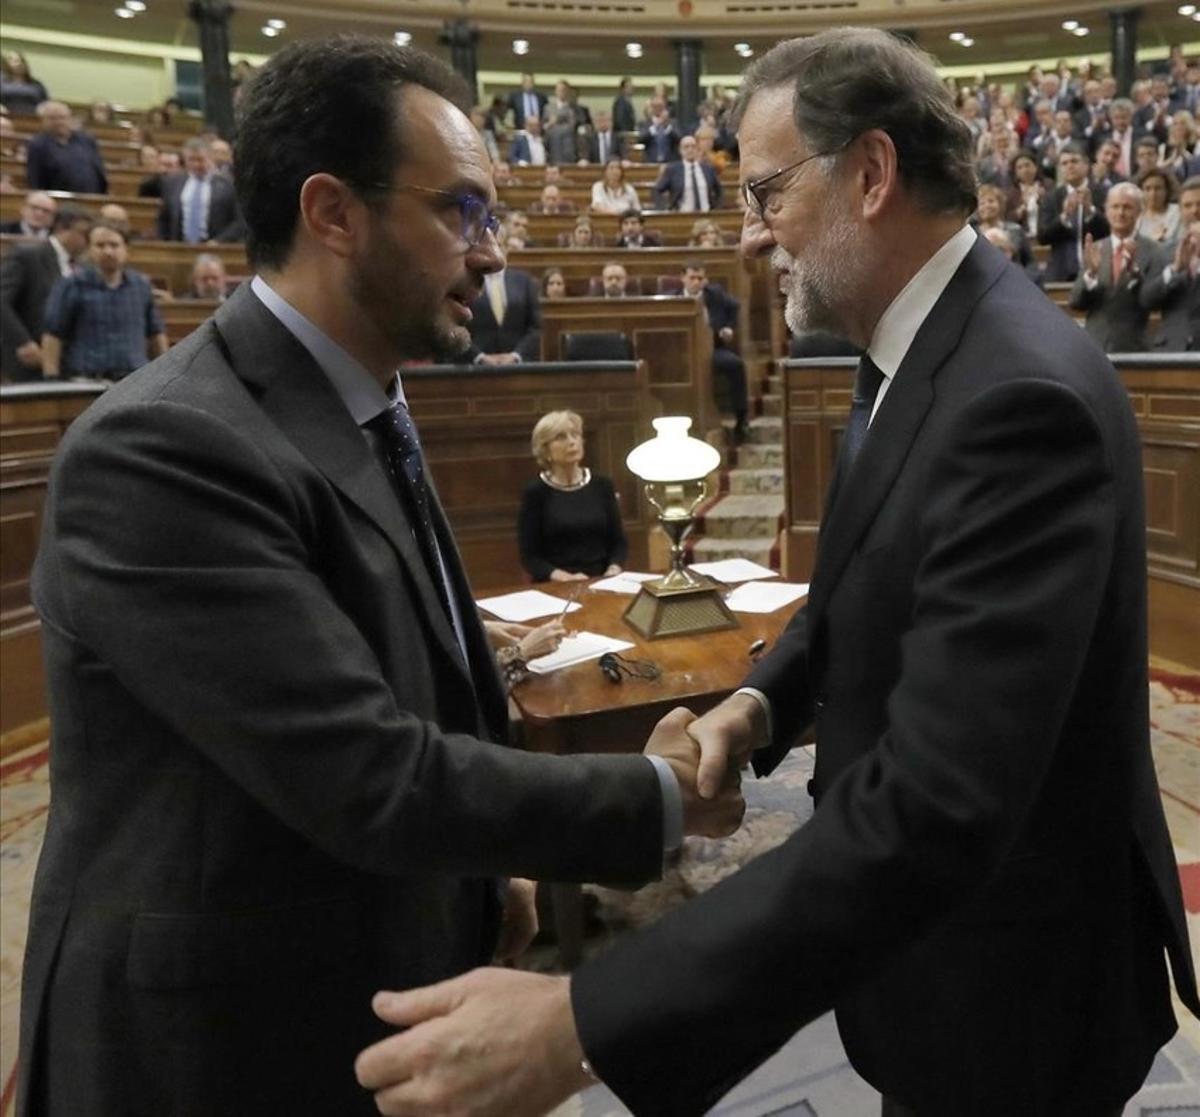 El portavoz del PSOE en el Congreso, Antonio Hernando, felicita a Mariano Rajoy tras la votación de investidura.